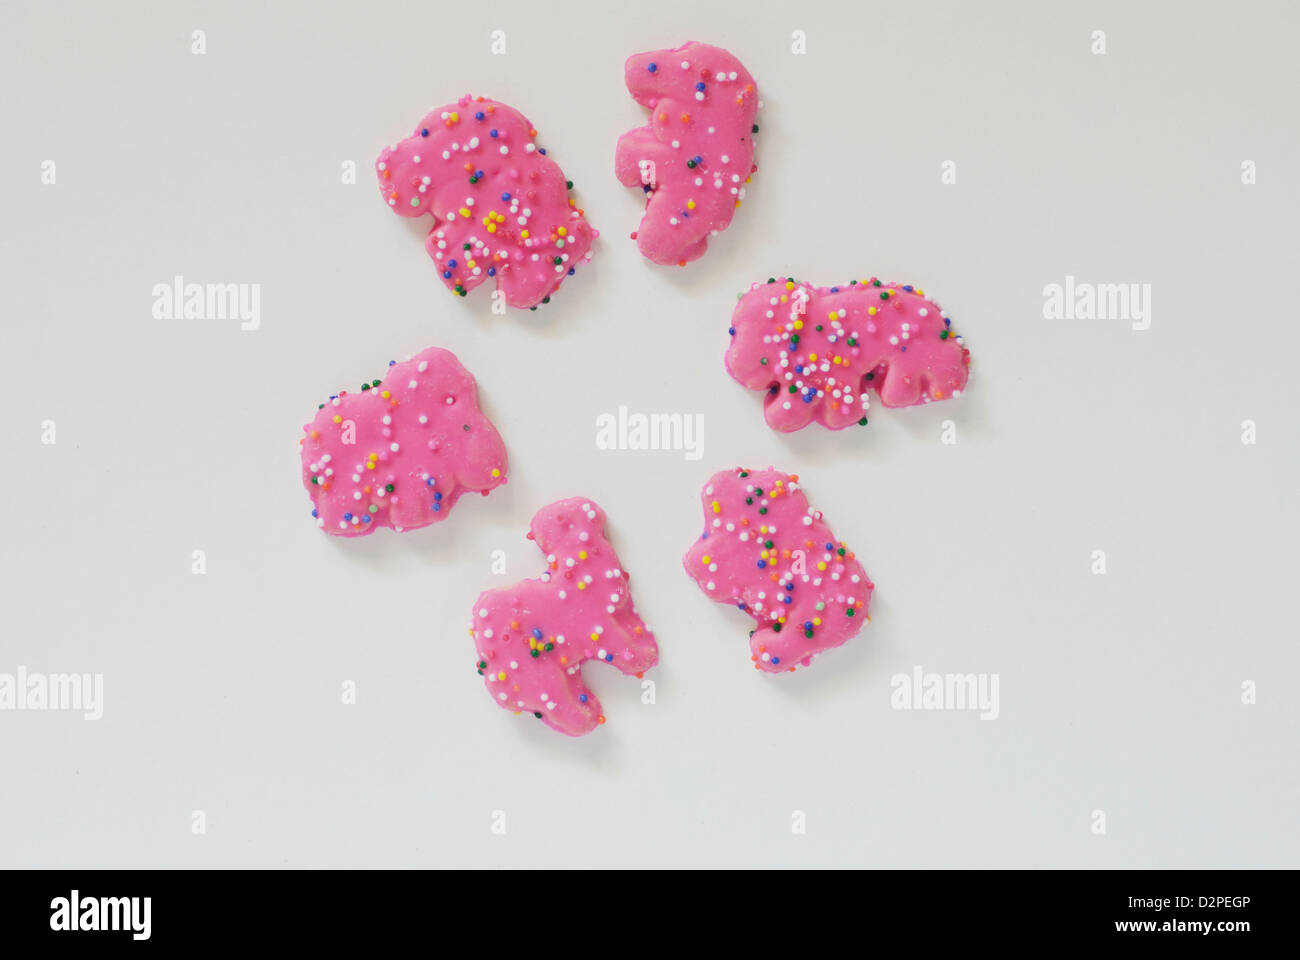 Rosa Frosted Tier Cookies mit Streuseln auf weißem Hintergrund Stockfoto